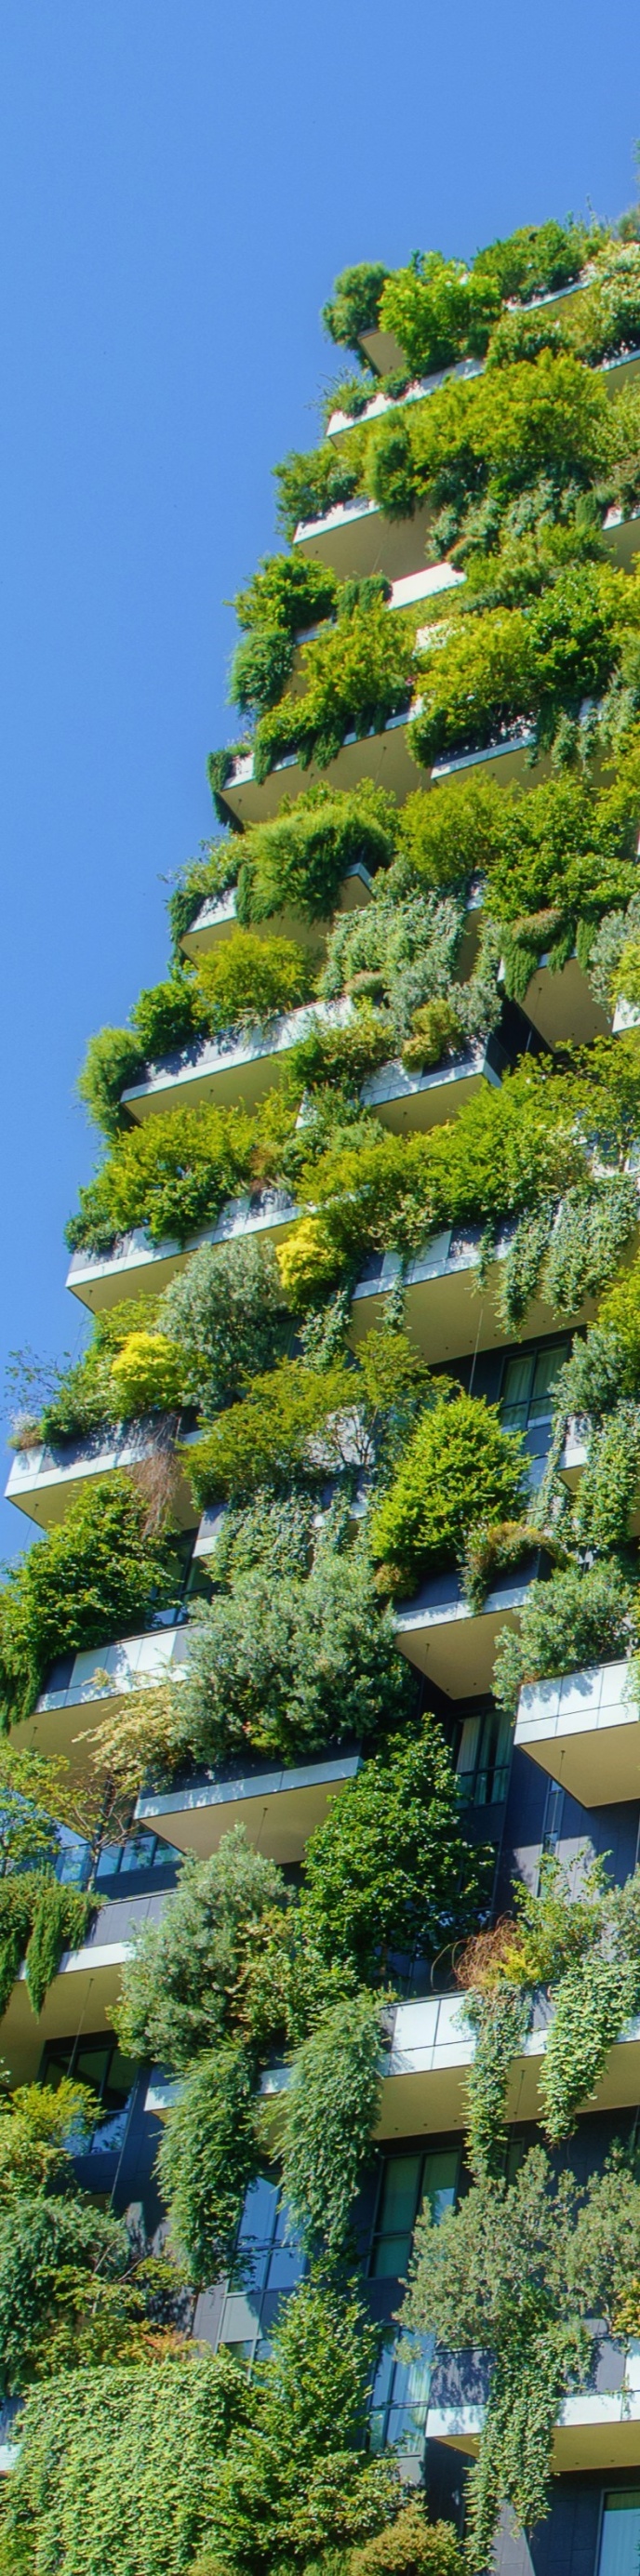 gebouw groen event duurzaamheid